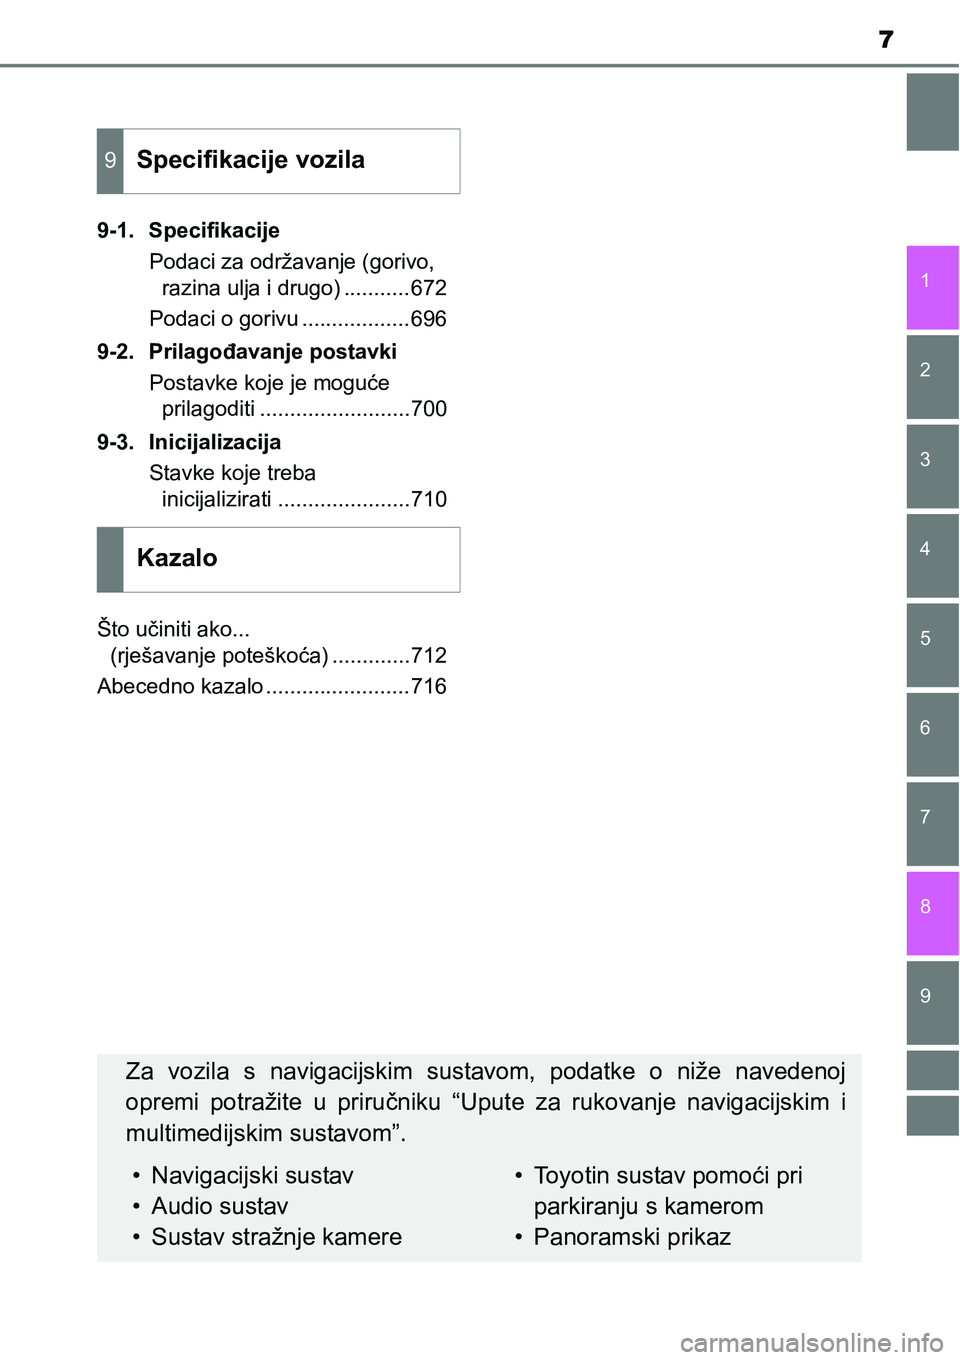 TOYOTA RAV4 2015  Upute Za Rukovanje (in Croatian) 9 8
7
1
7 6
5
4
3
2
9-1. Specifikacije
Podaci za održavanje (gorivo, 
razina ulja i drugo) ...........672
Podaci o gorivu ..................696
9-2. Prilagođavanje postavki
Postavke koje je moguće
